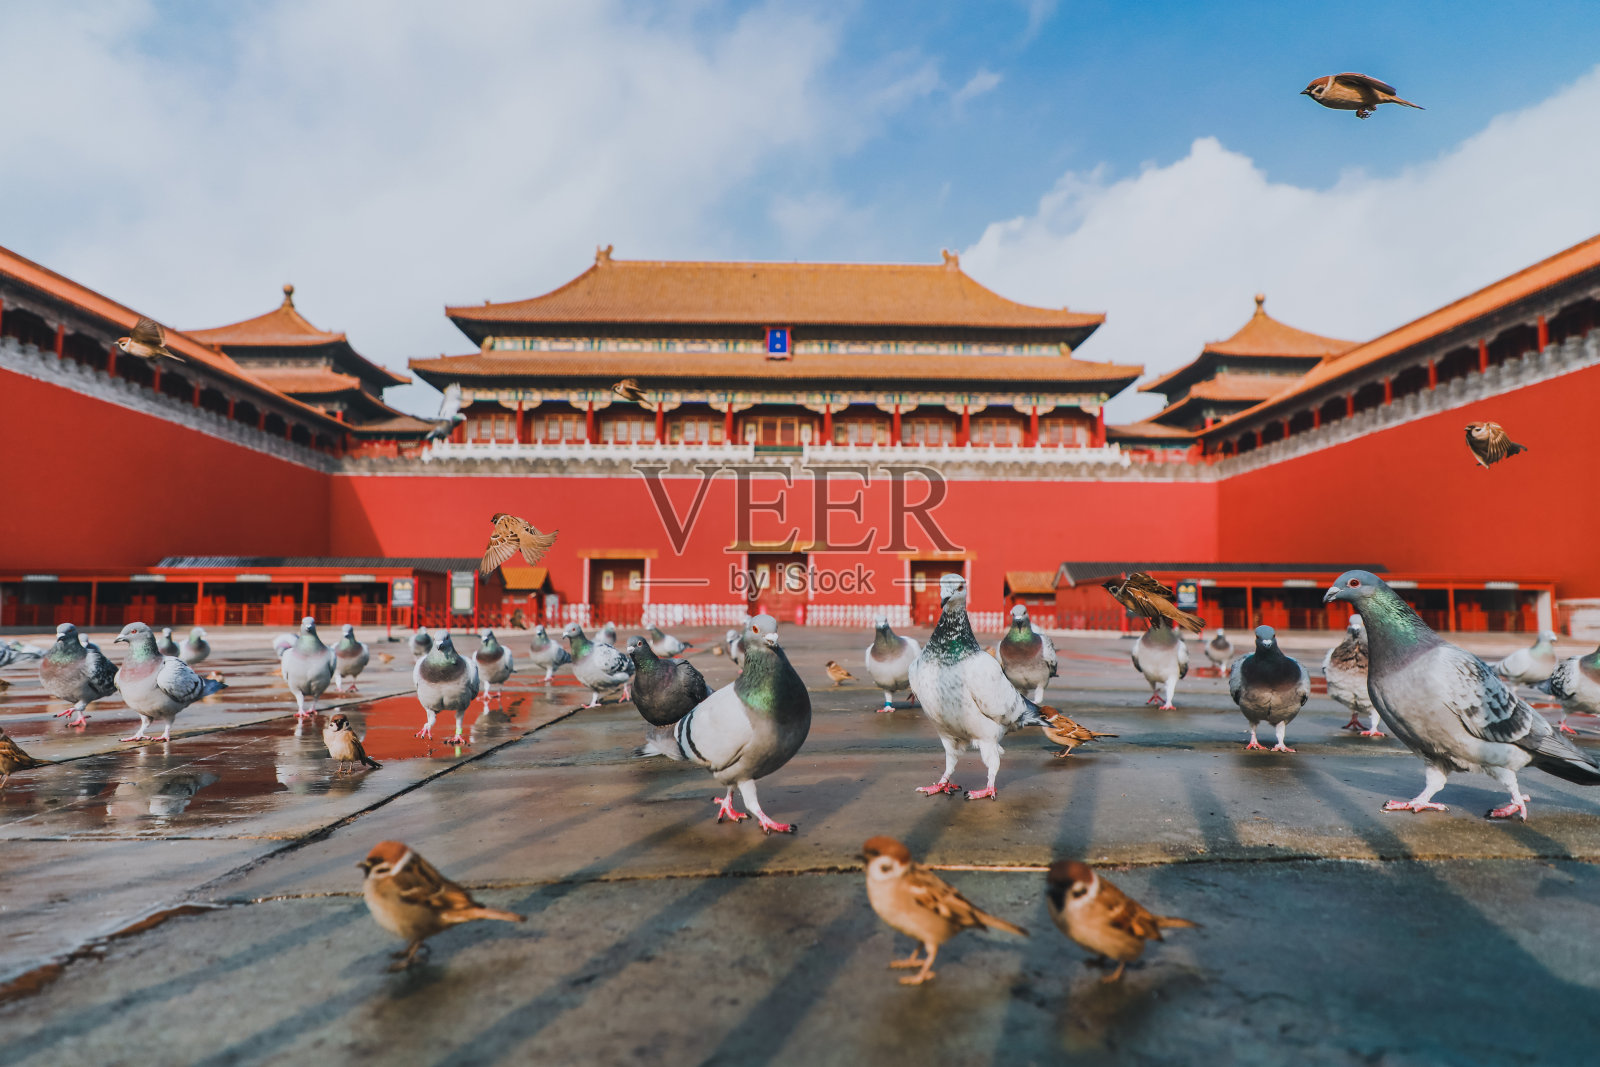 中国北京紫禁城广场上的鸽子。鸽子在北京紫禁城红墙前飞翔。图中牌匾的中文翻译:午门。照片摄影图片